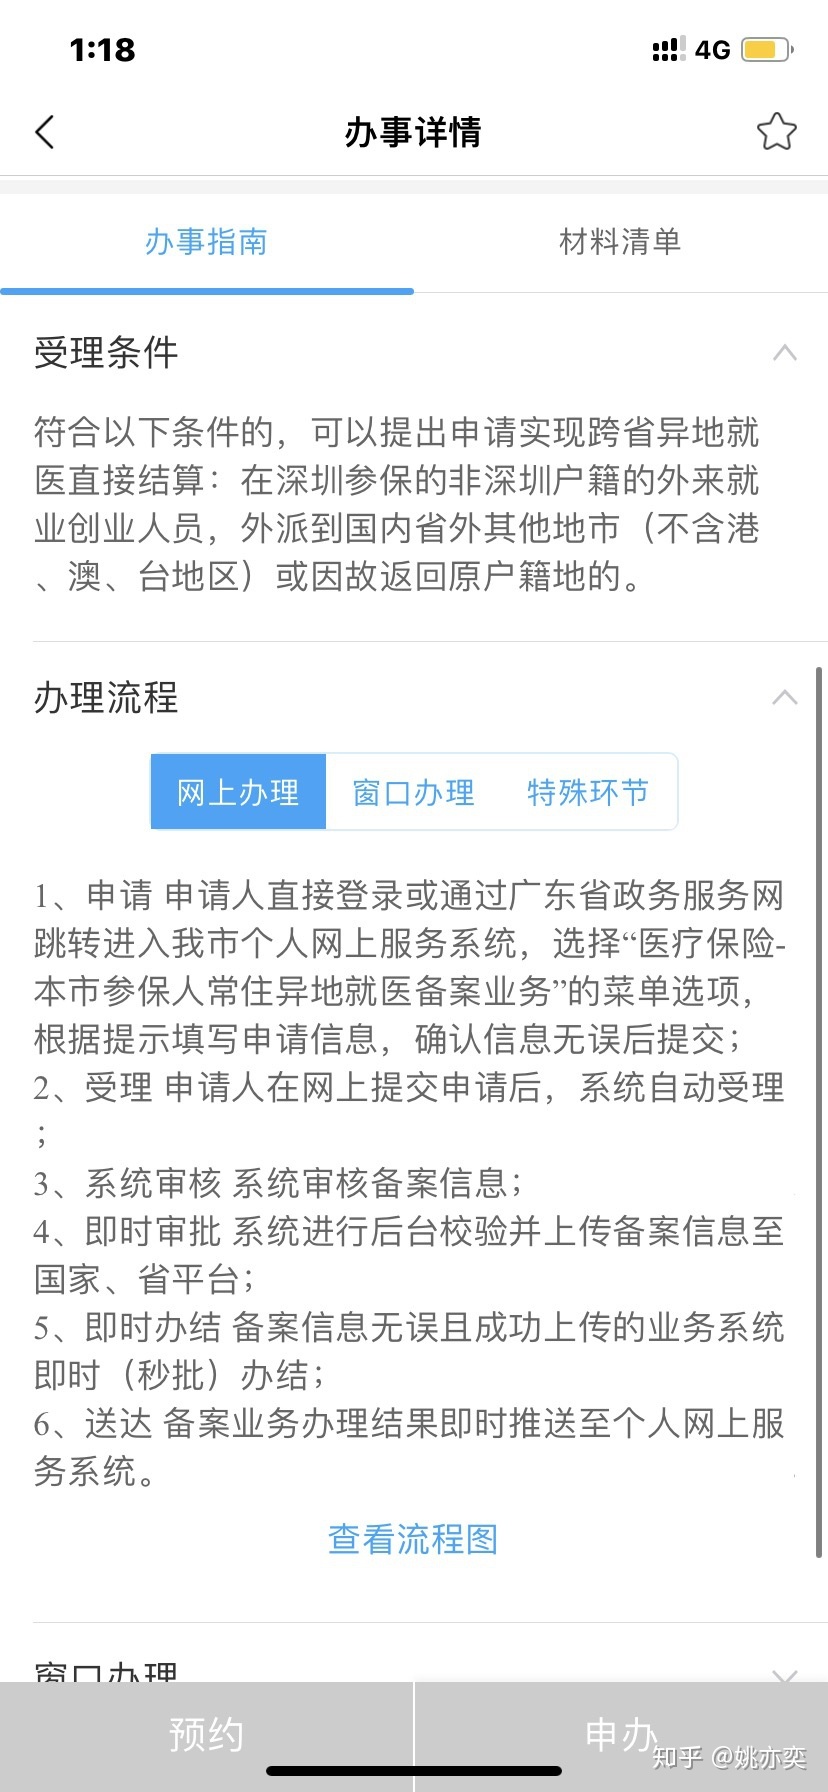 本人是非深户 在深圳工作 在深圳买的社保 现在要跨省异地就医需要办什么手续呢？